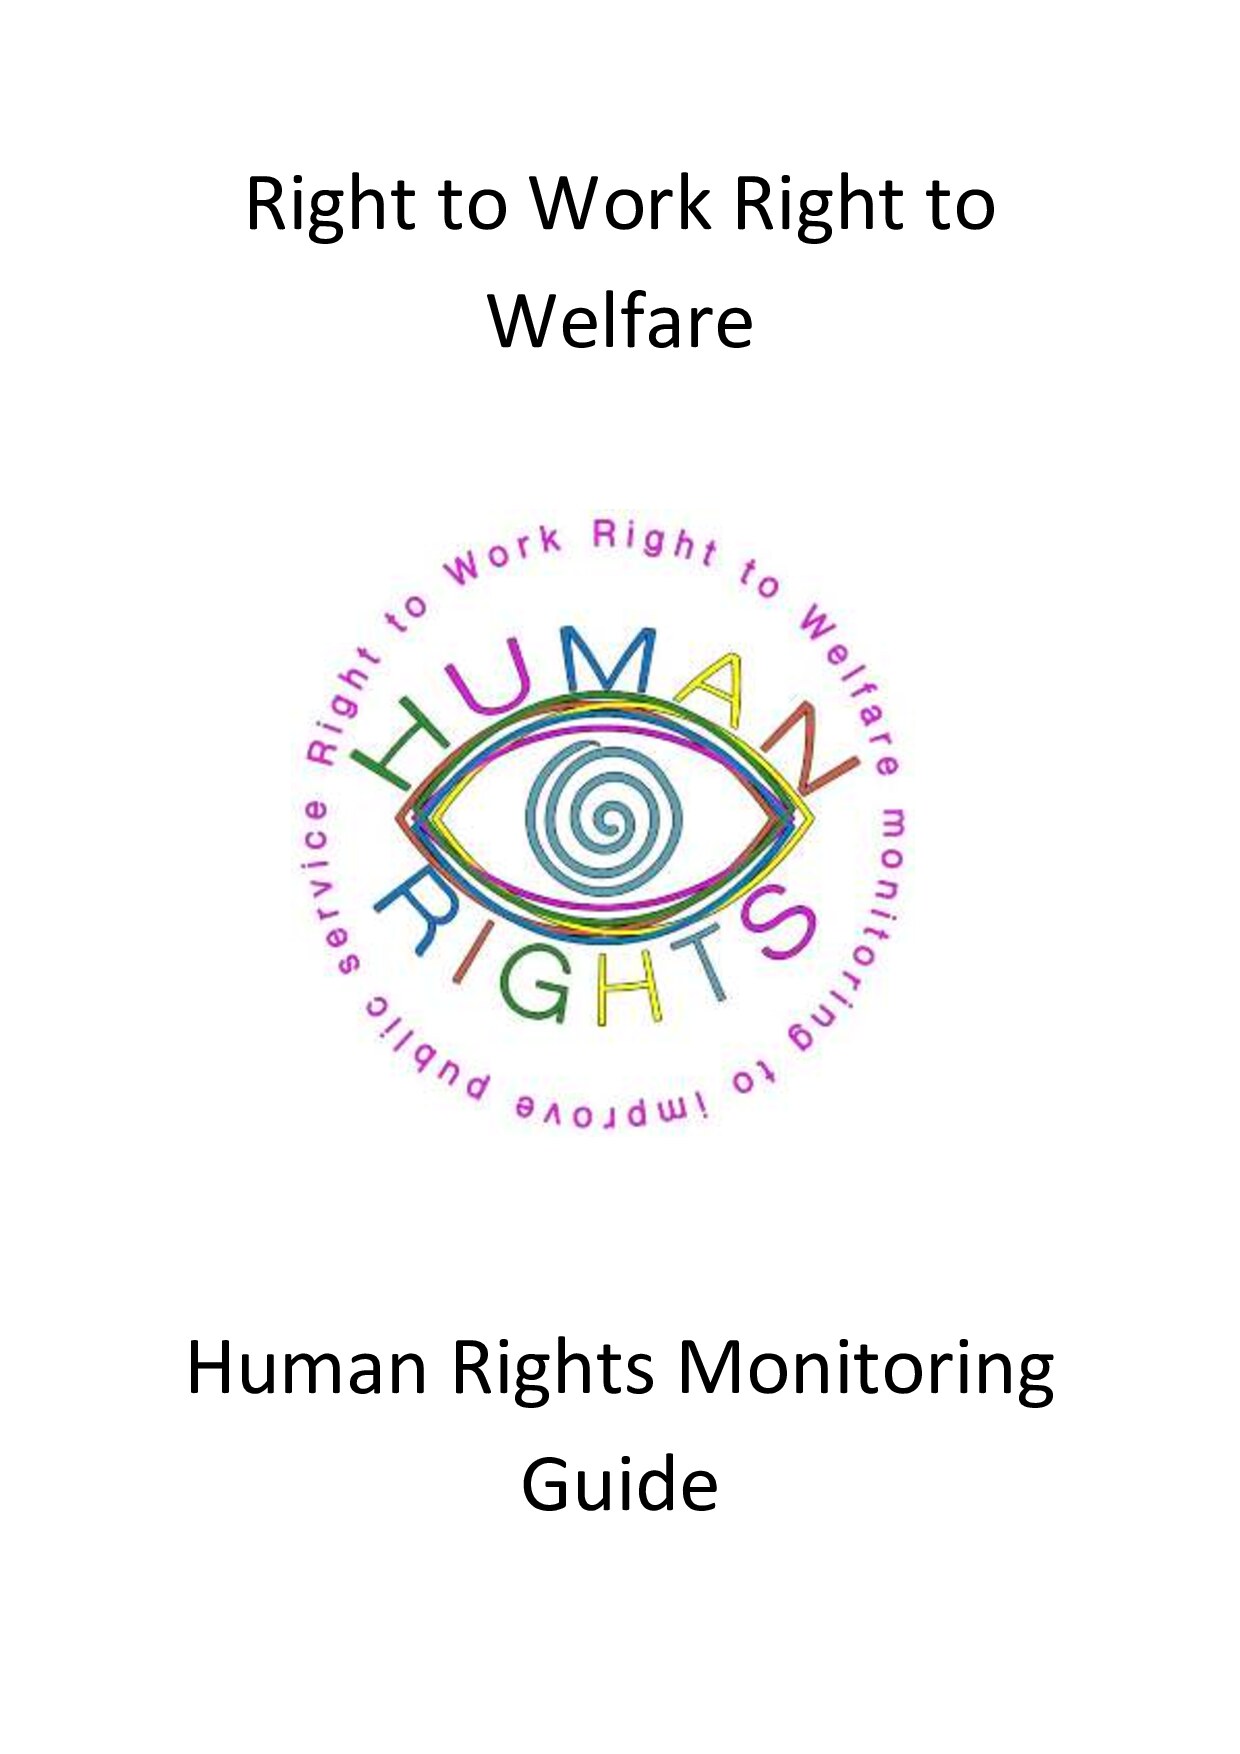 Human Rights Monitoring Guide